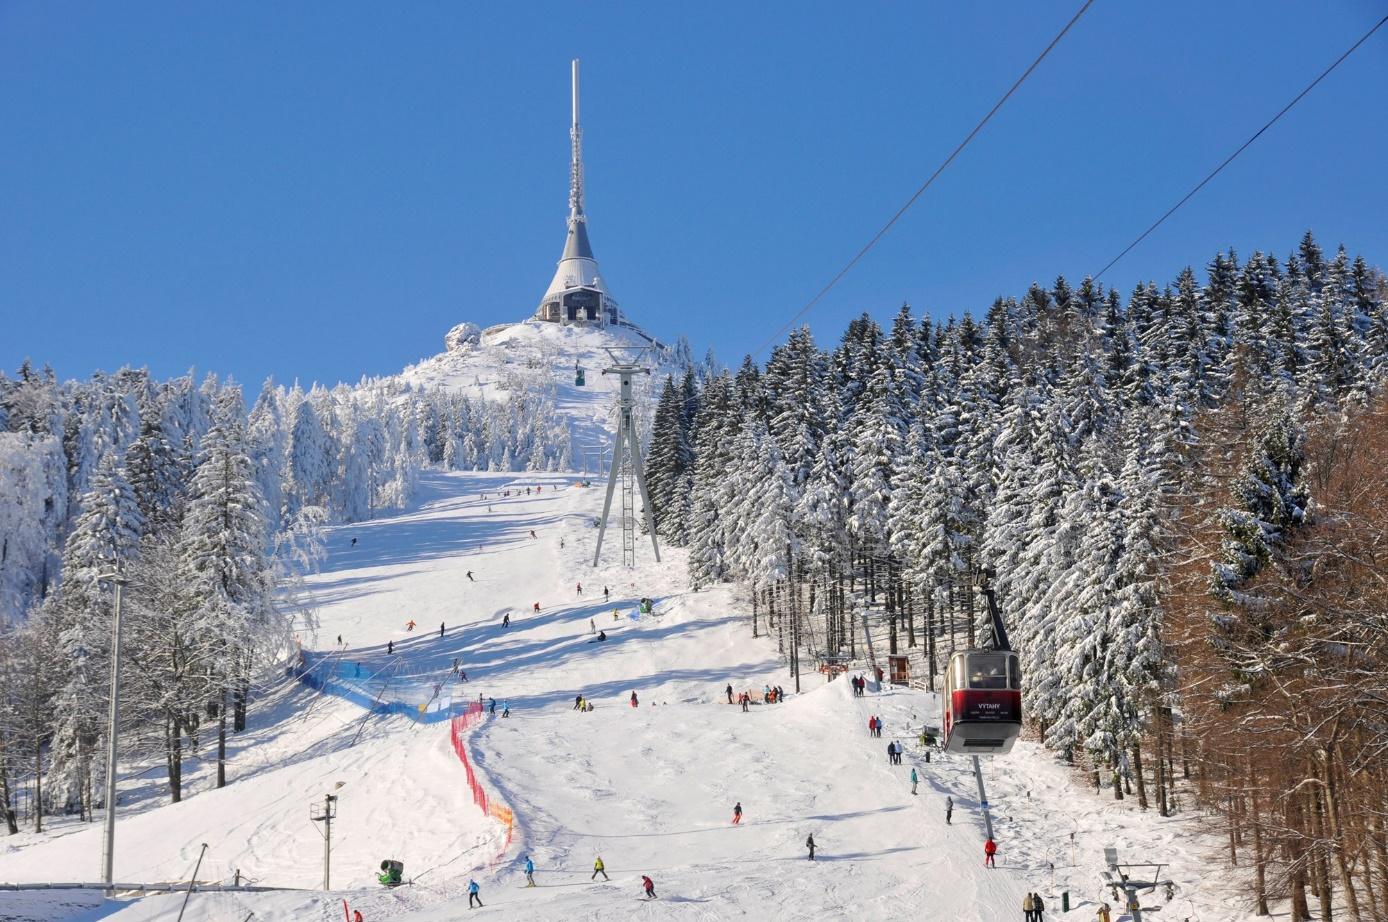 Obraz zawierający śnieg, zewnętrzne, niebo, jazda na nartach

Opis wygenerowany automatycznie